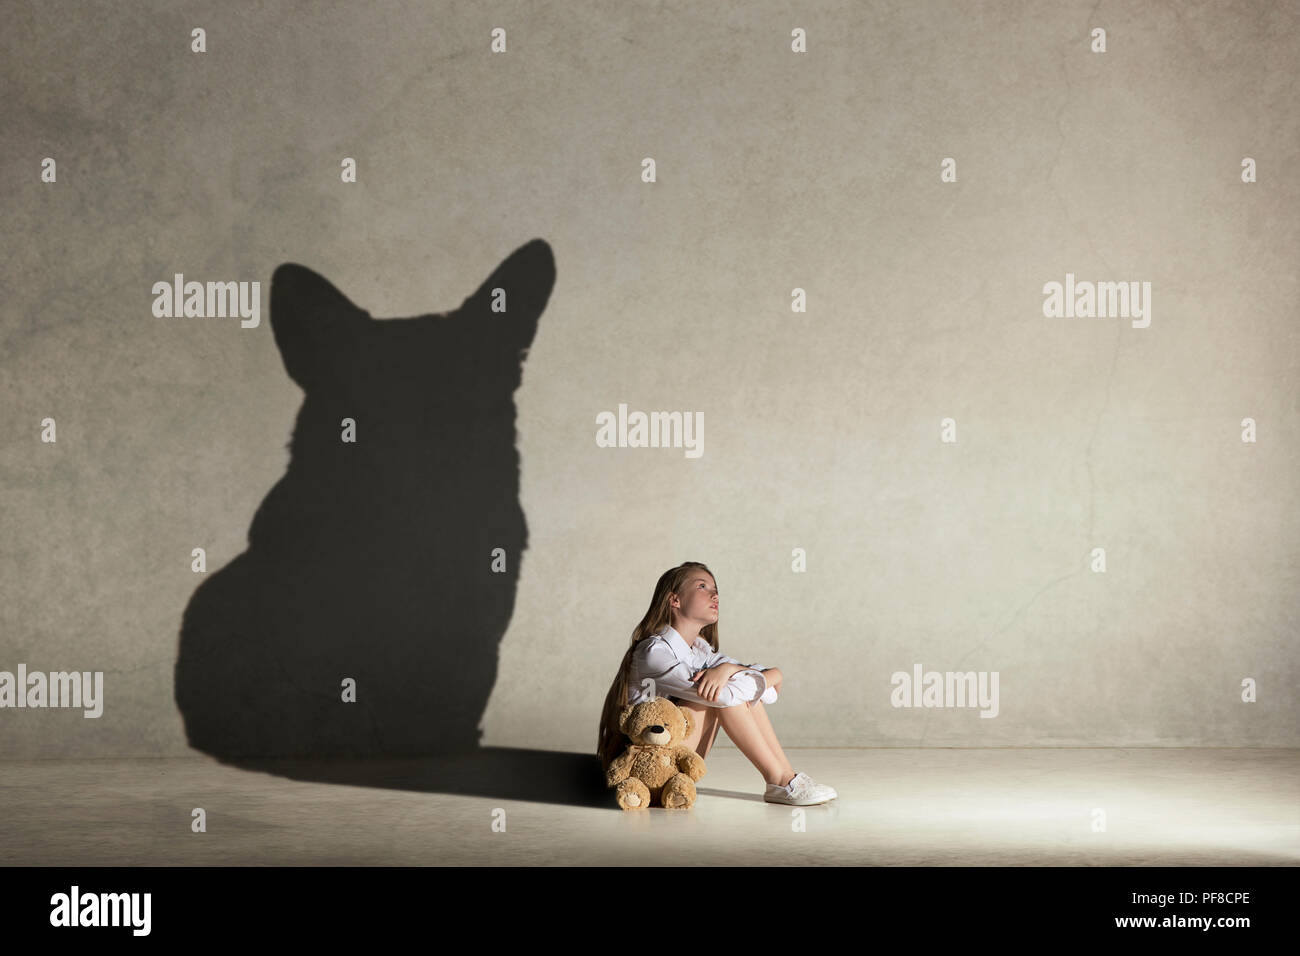 Petite fille à rêver de chien. L'enfance et de l'dream concept. Image conceptuelle avec l'ombre de femme figure sur le mur de studio Banque D'Images